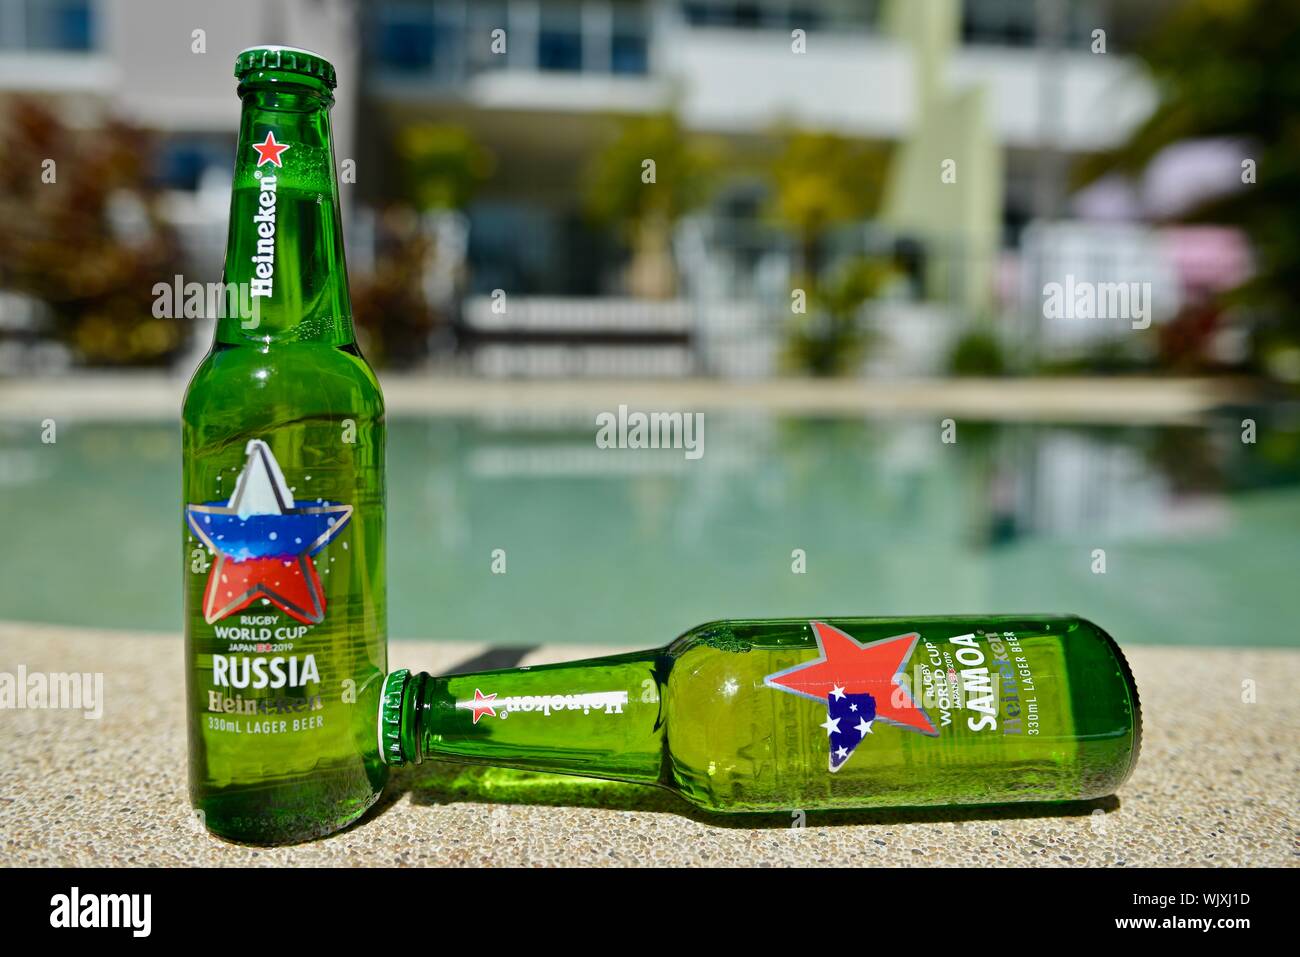 Russia versus Samoa, Heineken 2019 Japan Rugby world cup beer bottles Stock Photo